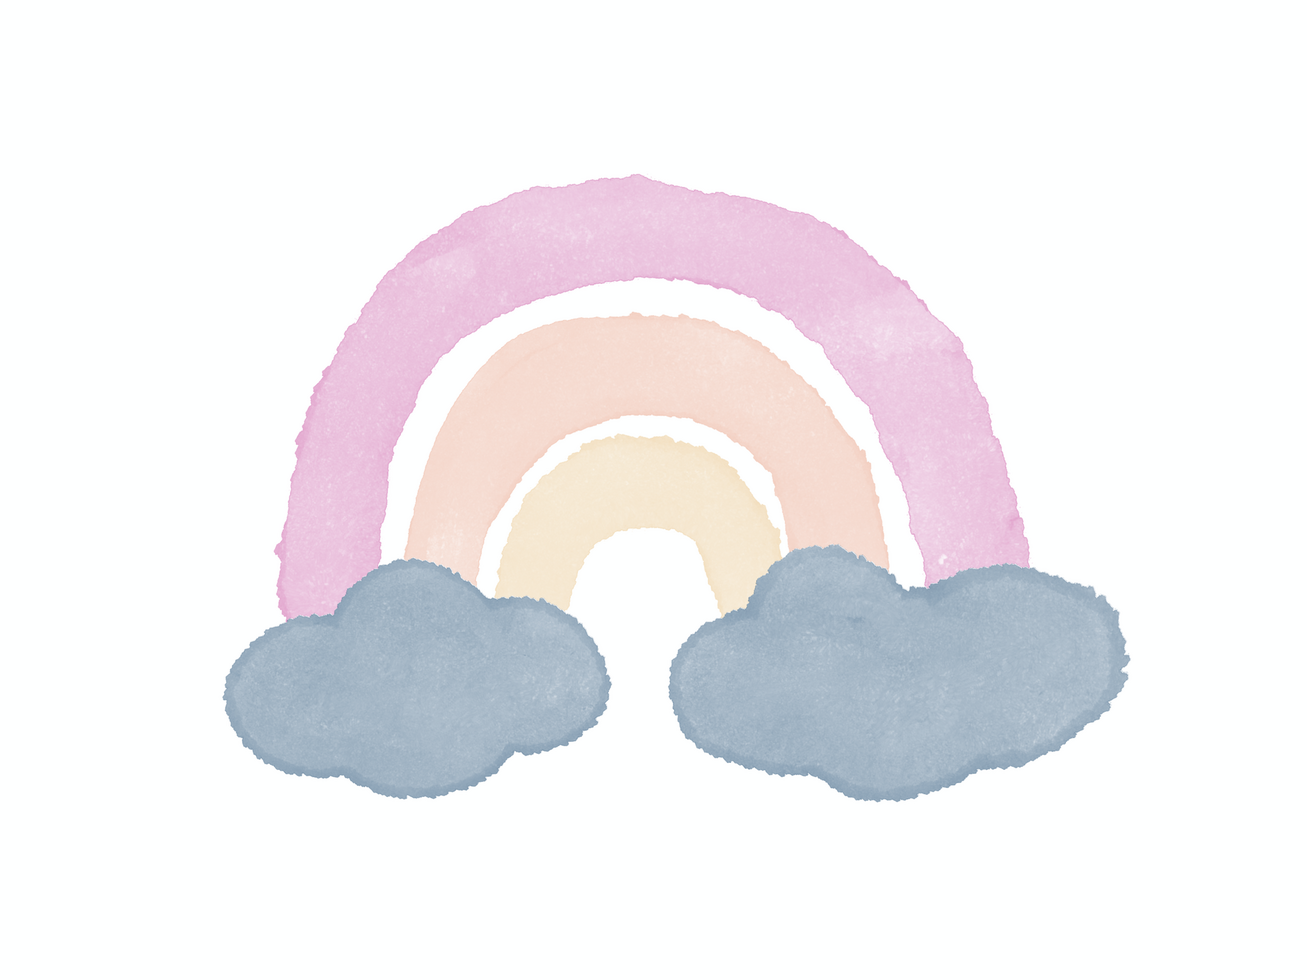 süß kindisch Zeichnung auf ein Weiß Hintergrund. minimalistisch Illustration von Regenbogen und Wolken im Aquarell Stil psd